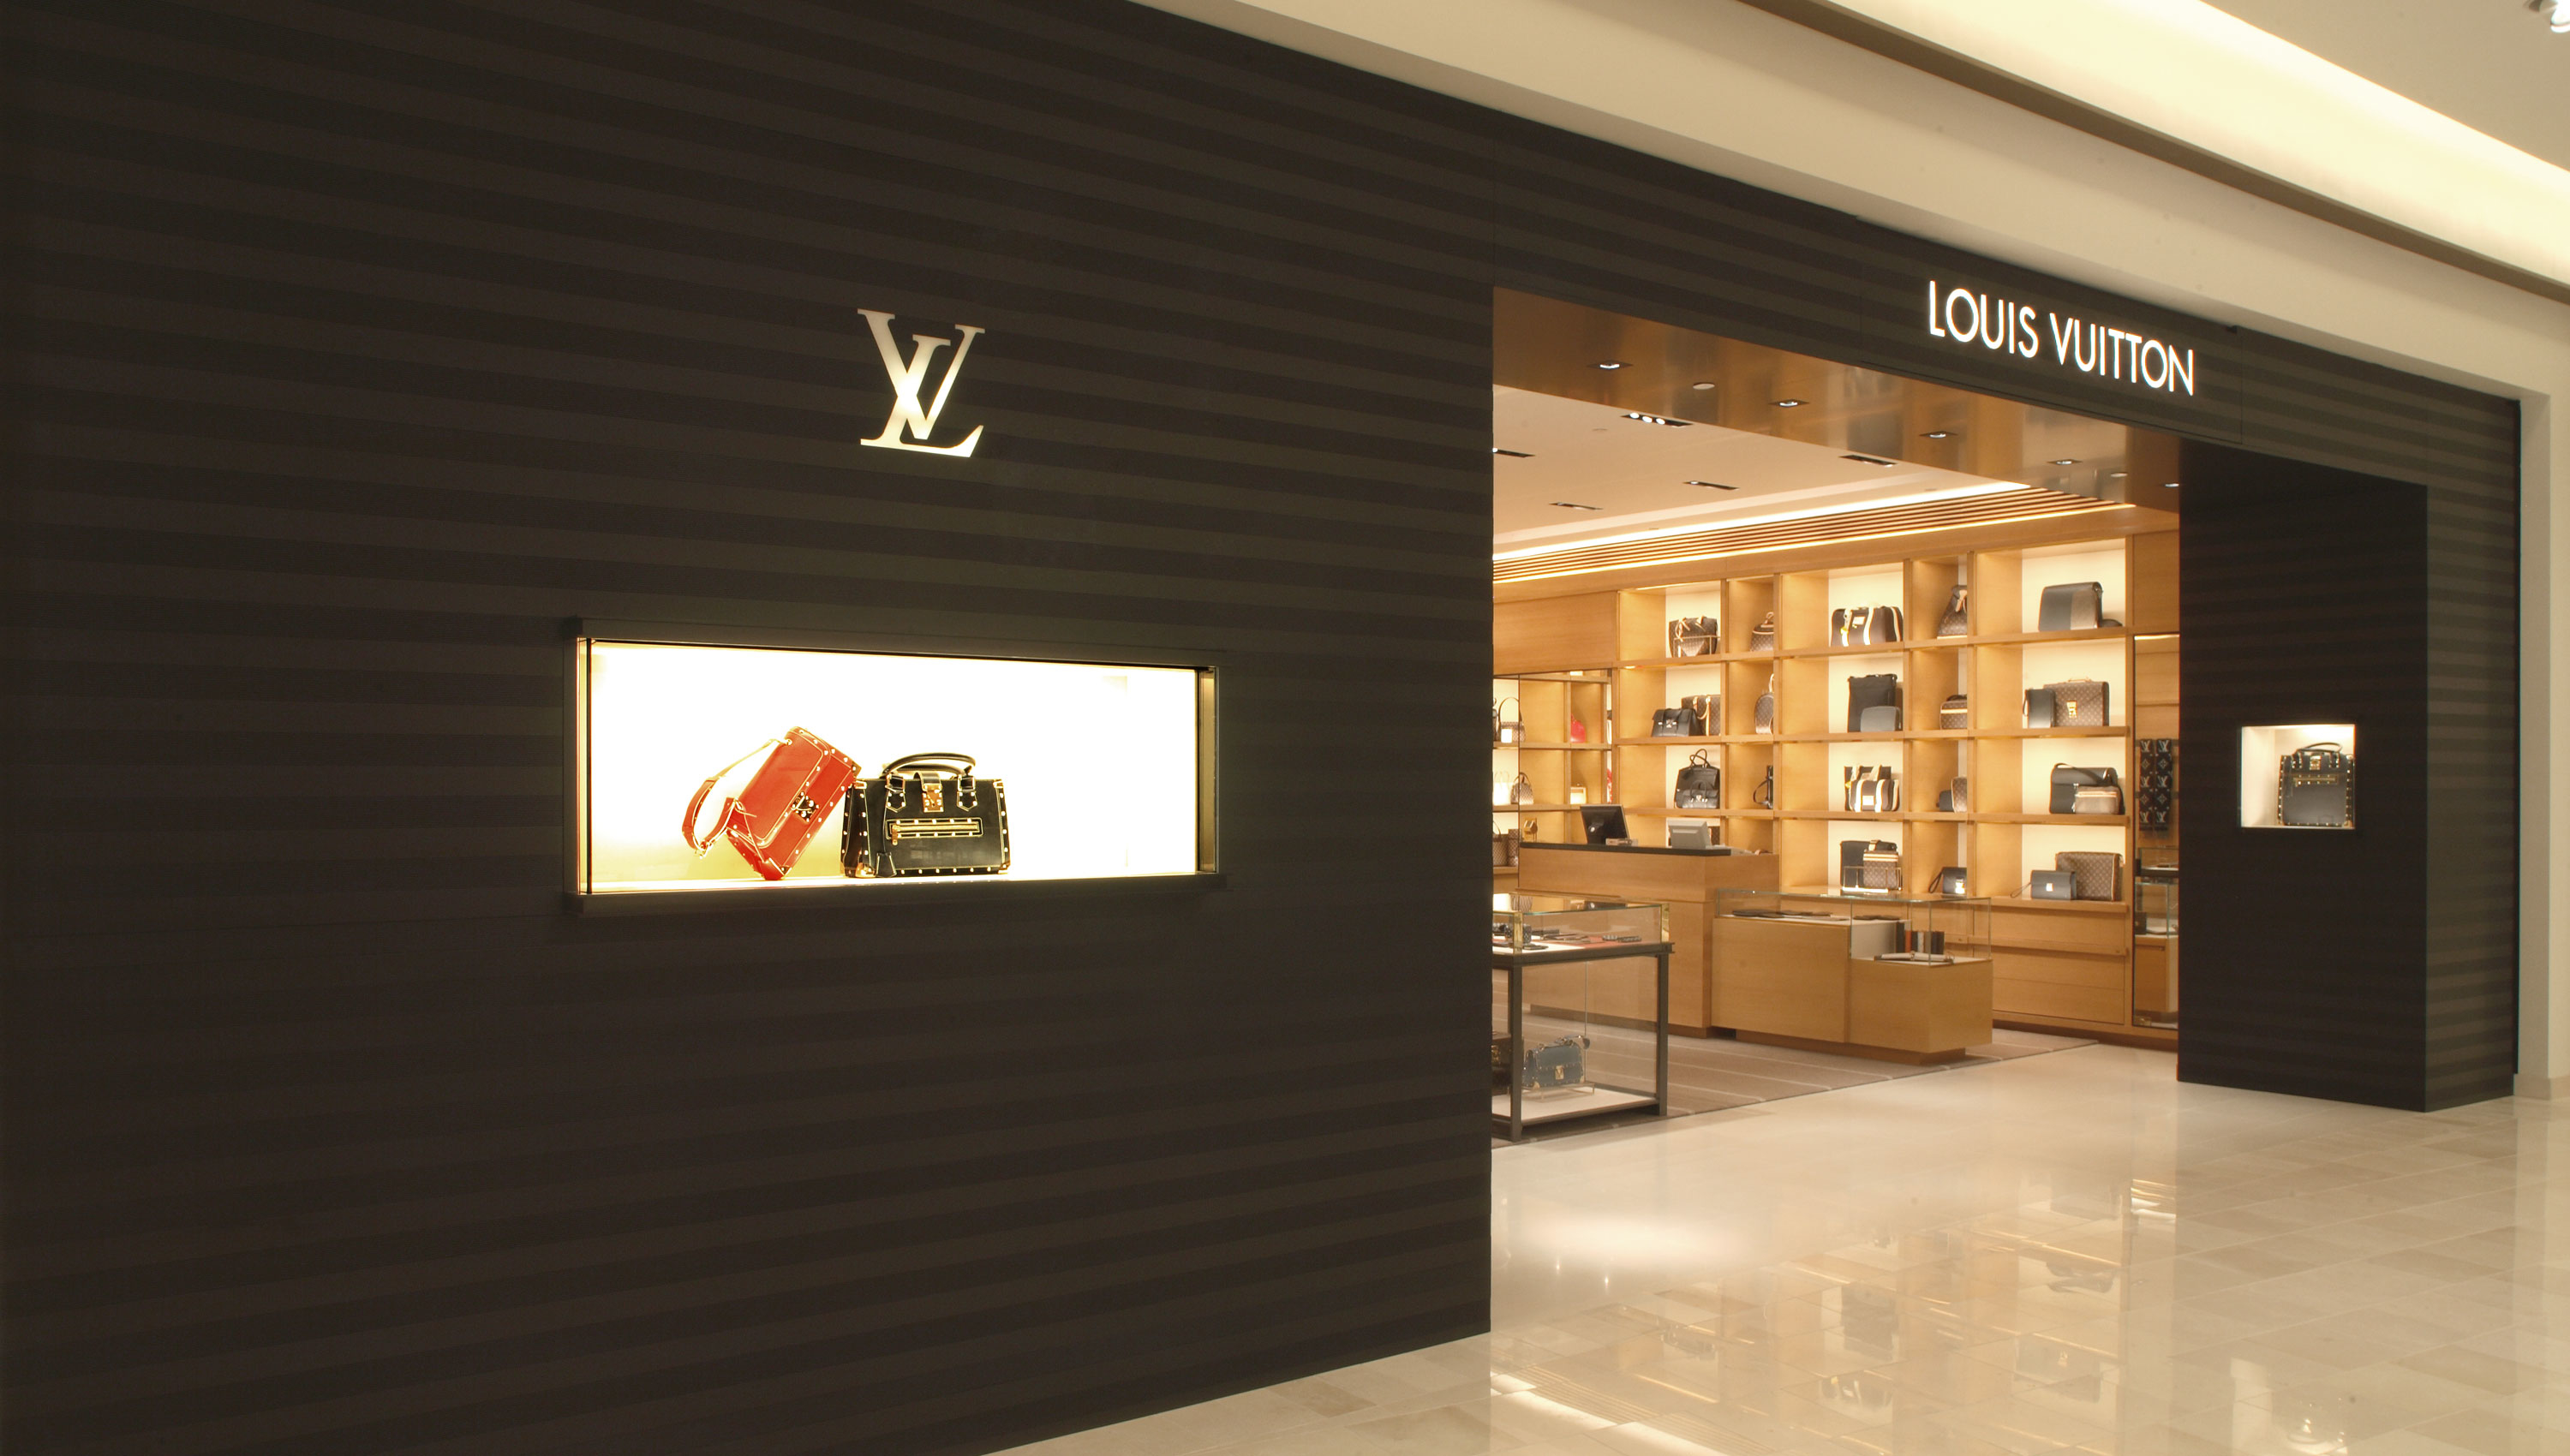 Donde puedo comprar esta riñonera Louis Vuitton Blanca. : r/SpainReps